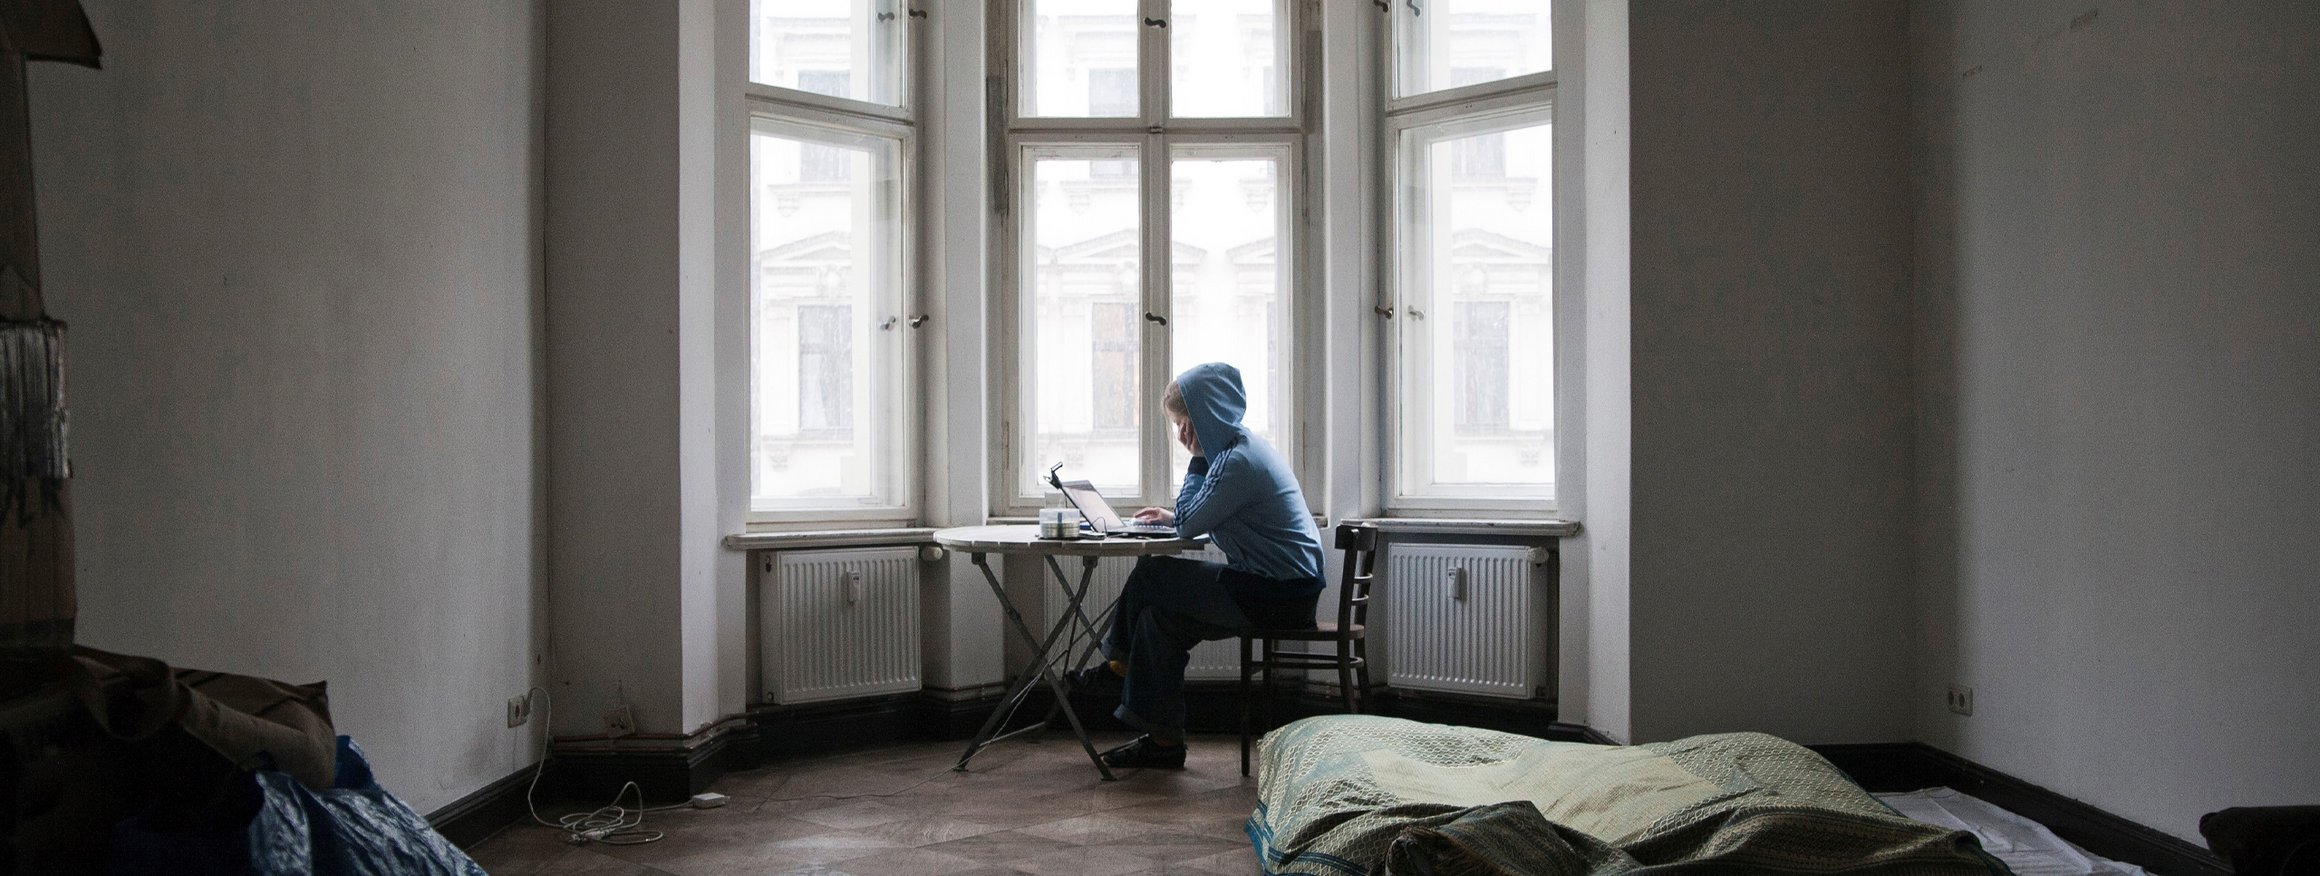 Eine Frau sitzt einsam in einer Stadtwohnung an ihrem Laptop am Fenster in einem Erker